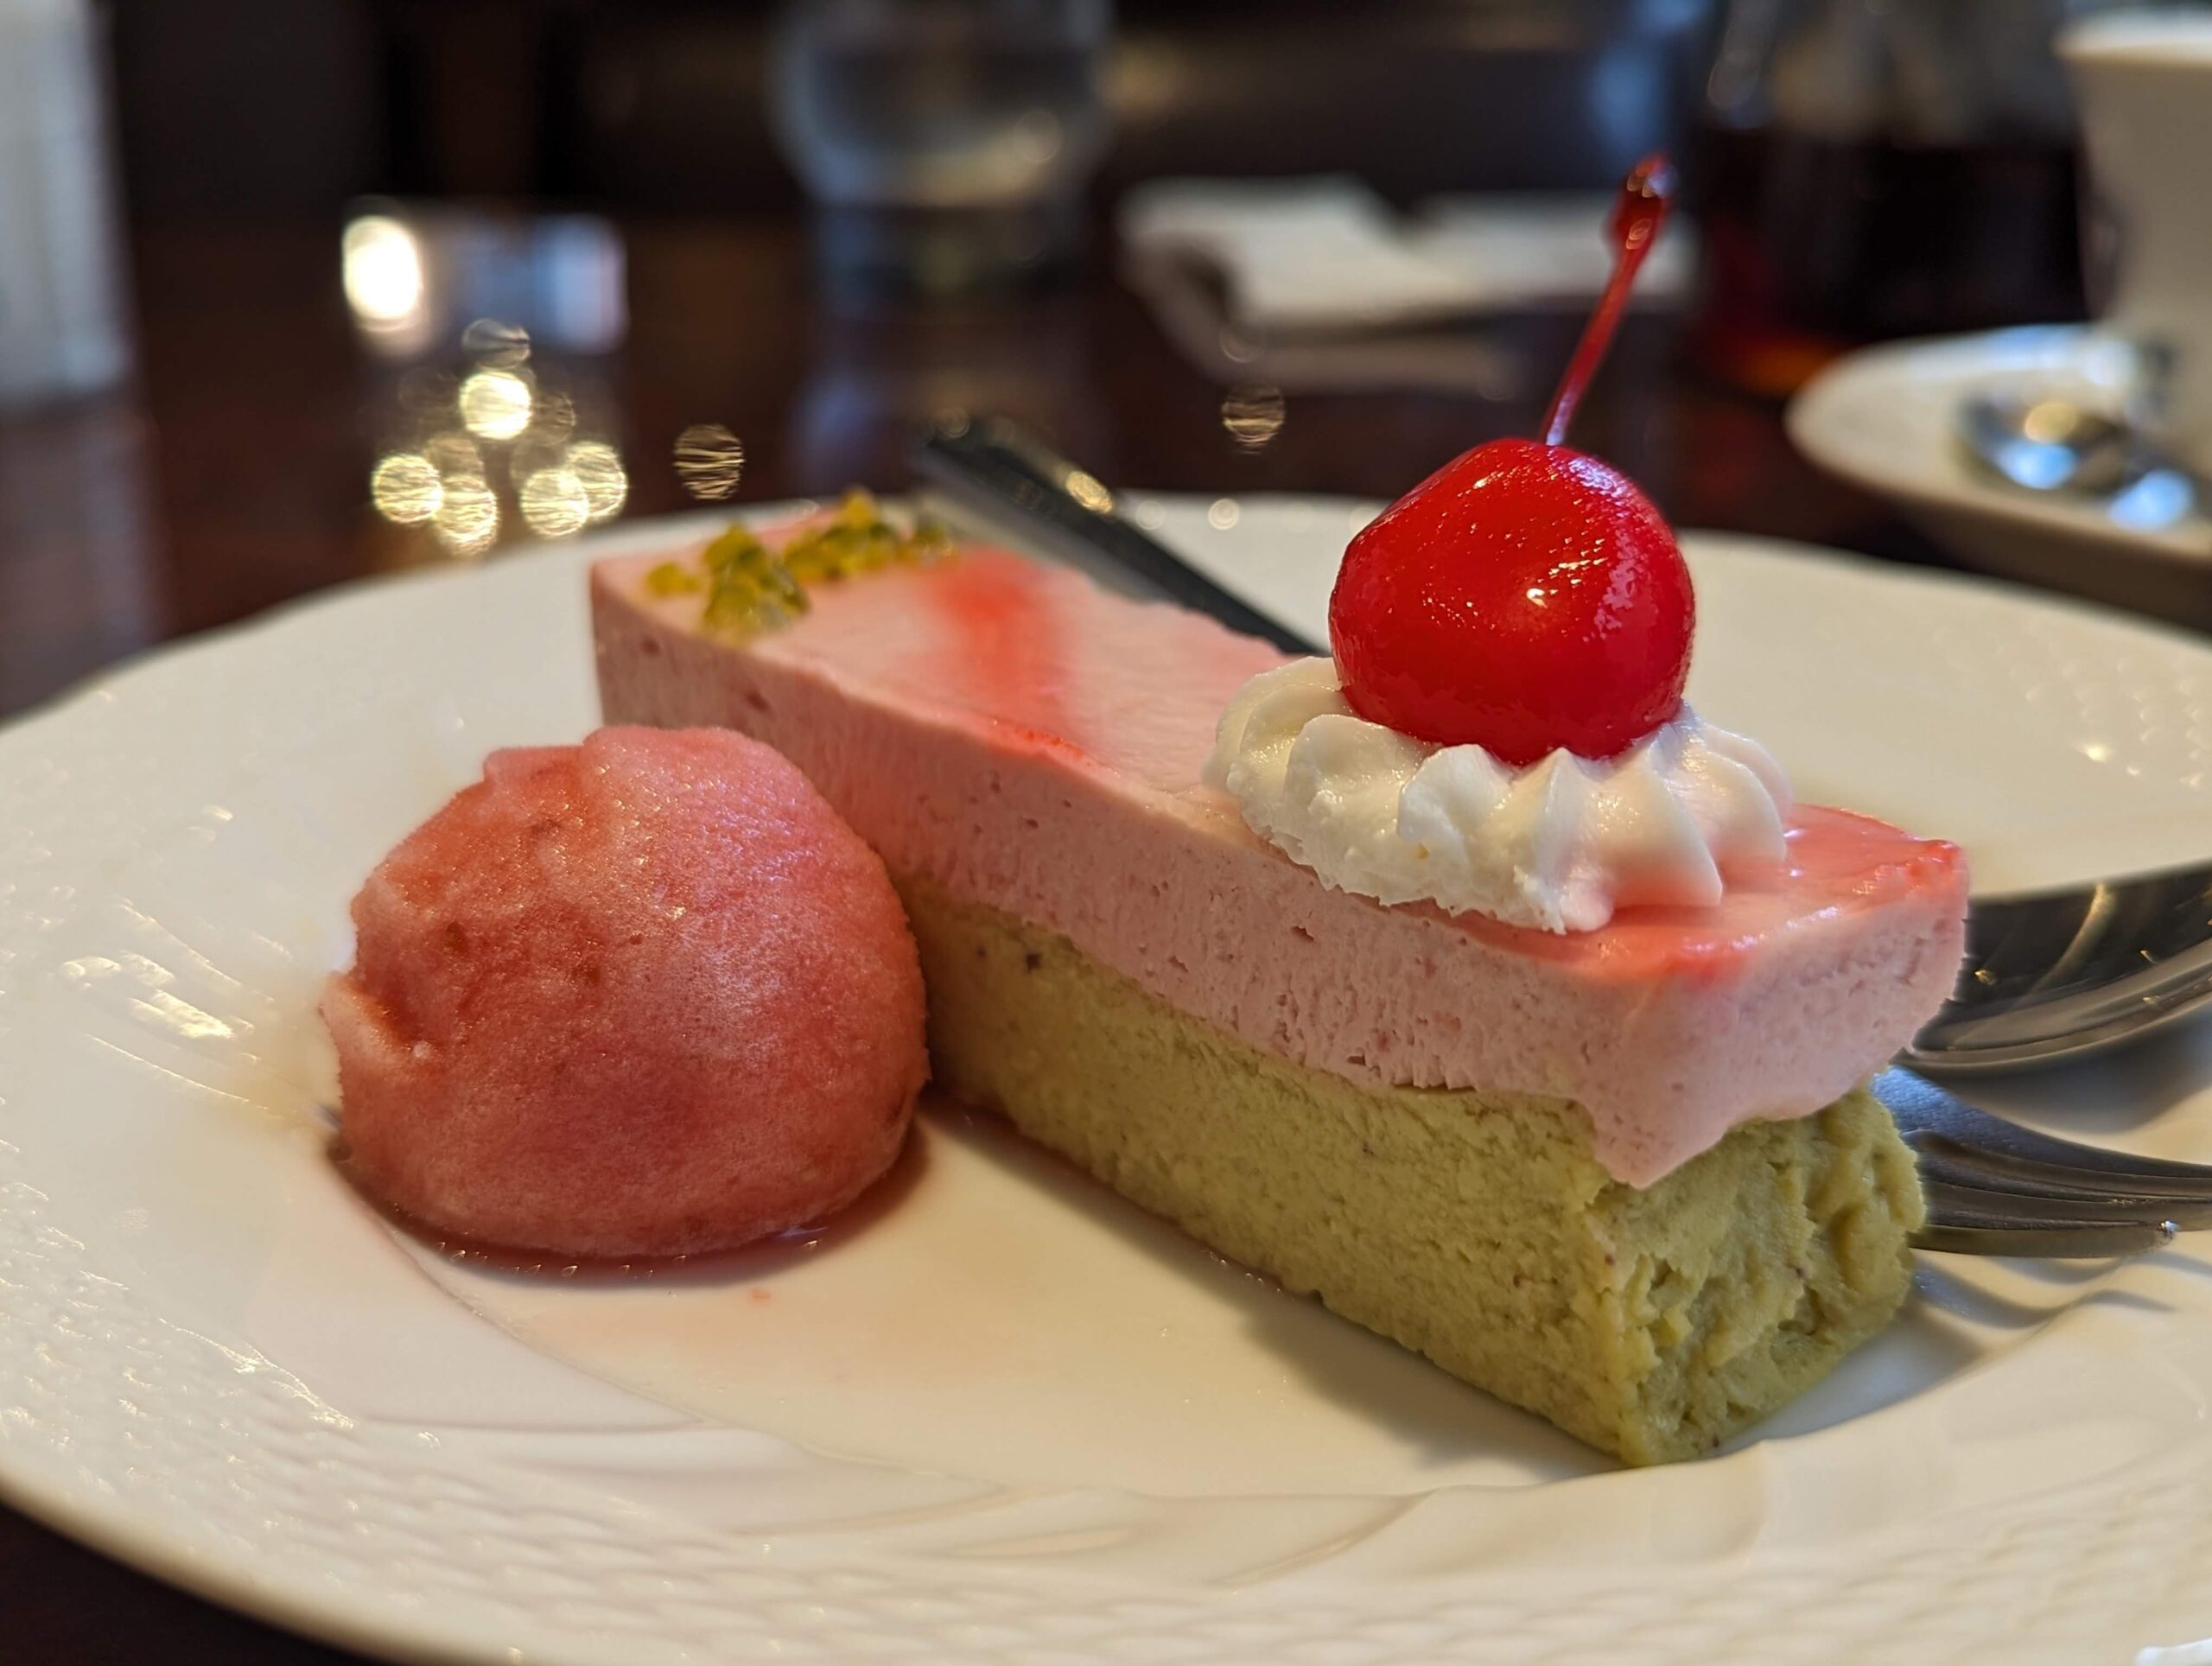 星乃珈琲店の「苺とピスタチオのWチーズケーキ ラズベリーソルベ添え」の写真 (7)